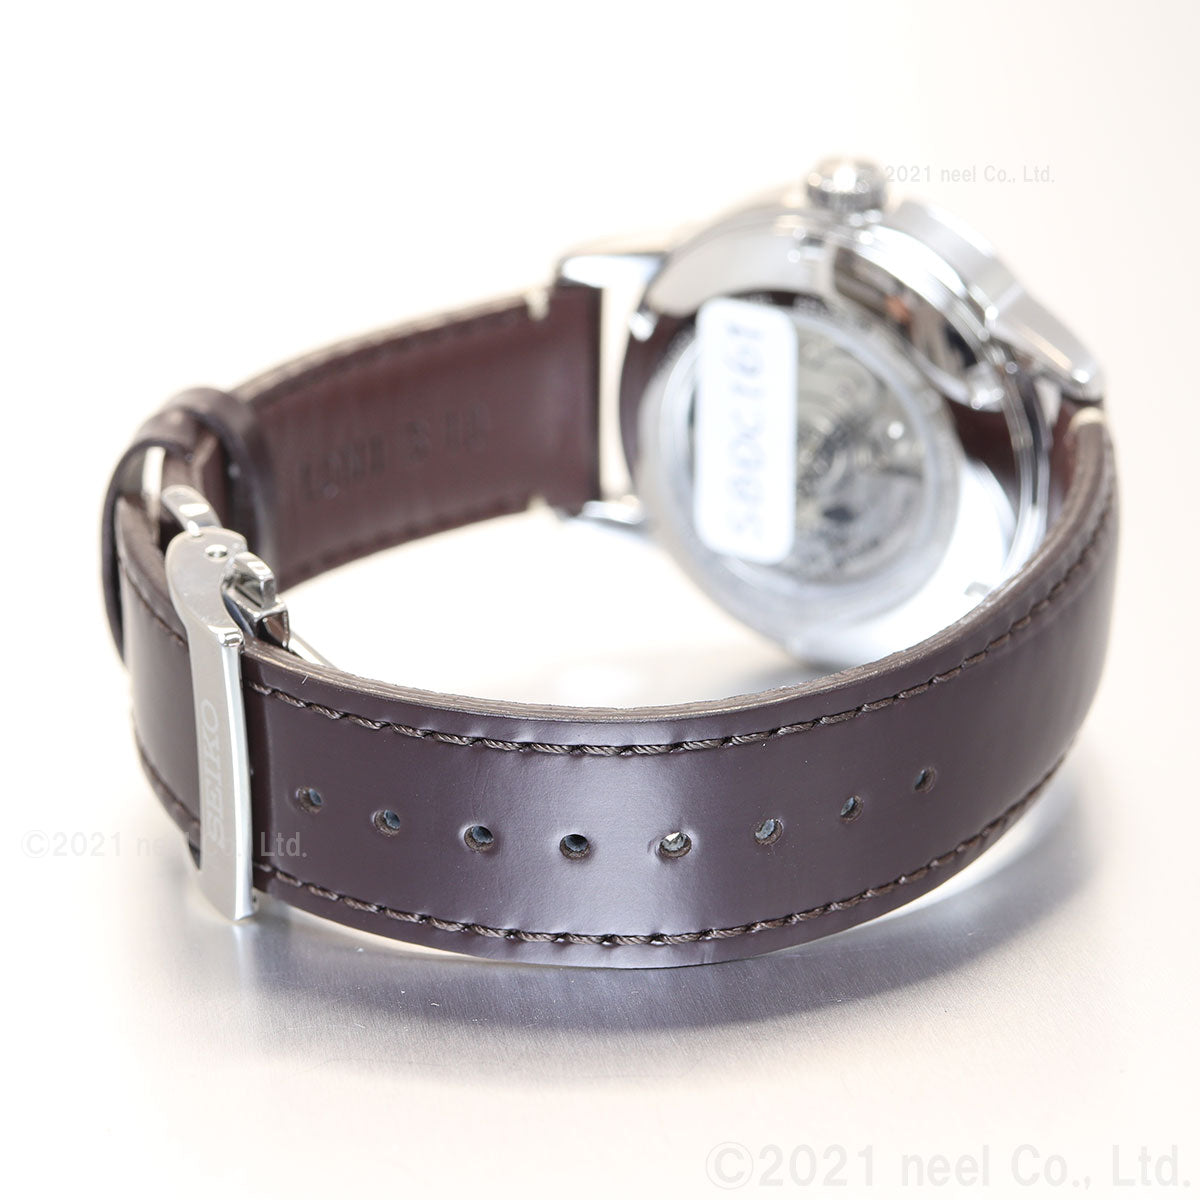 セイコー プロスペックス SEIKO PROSPEX アルピニスト メカニカル 自動巻き コアショップ専用 流通限定モデル 腕時計 メンズ SBDC161